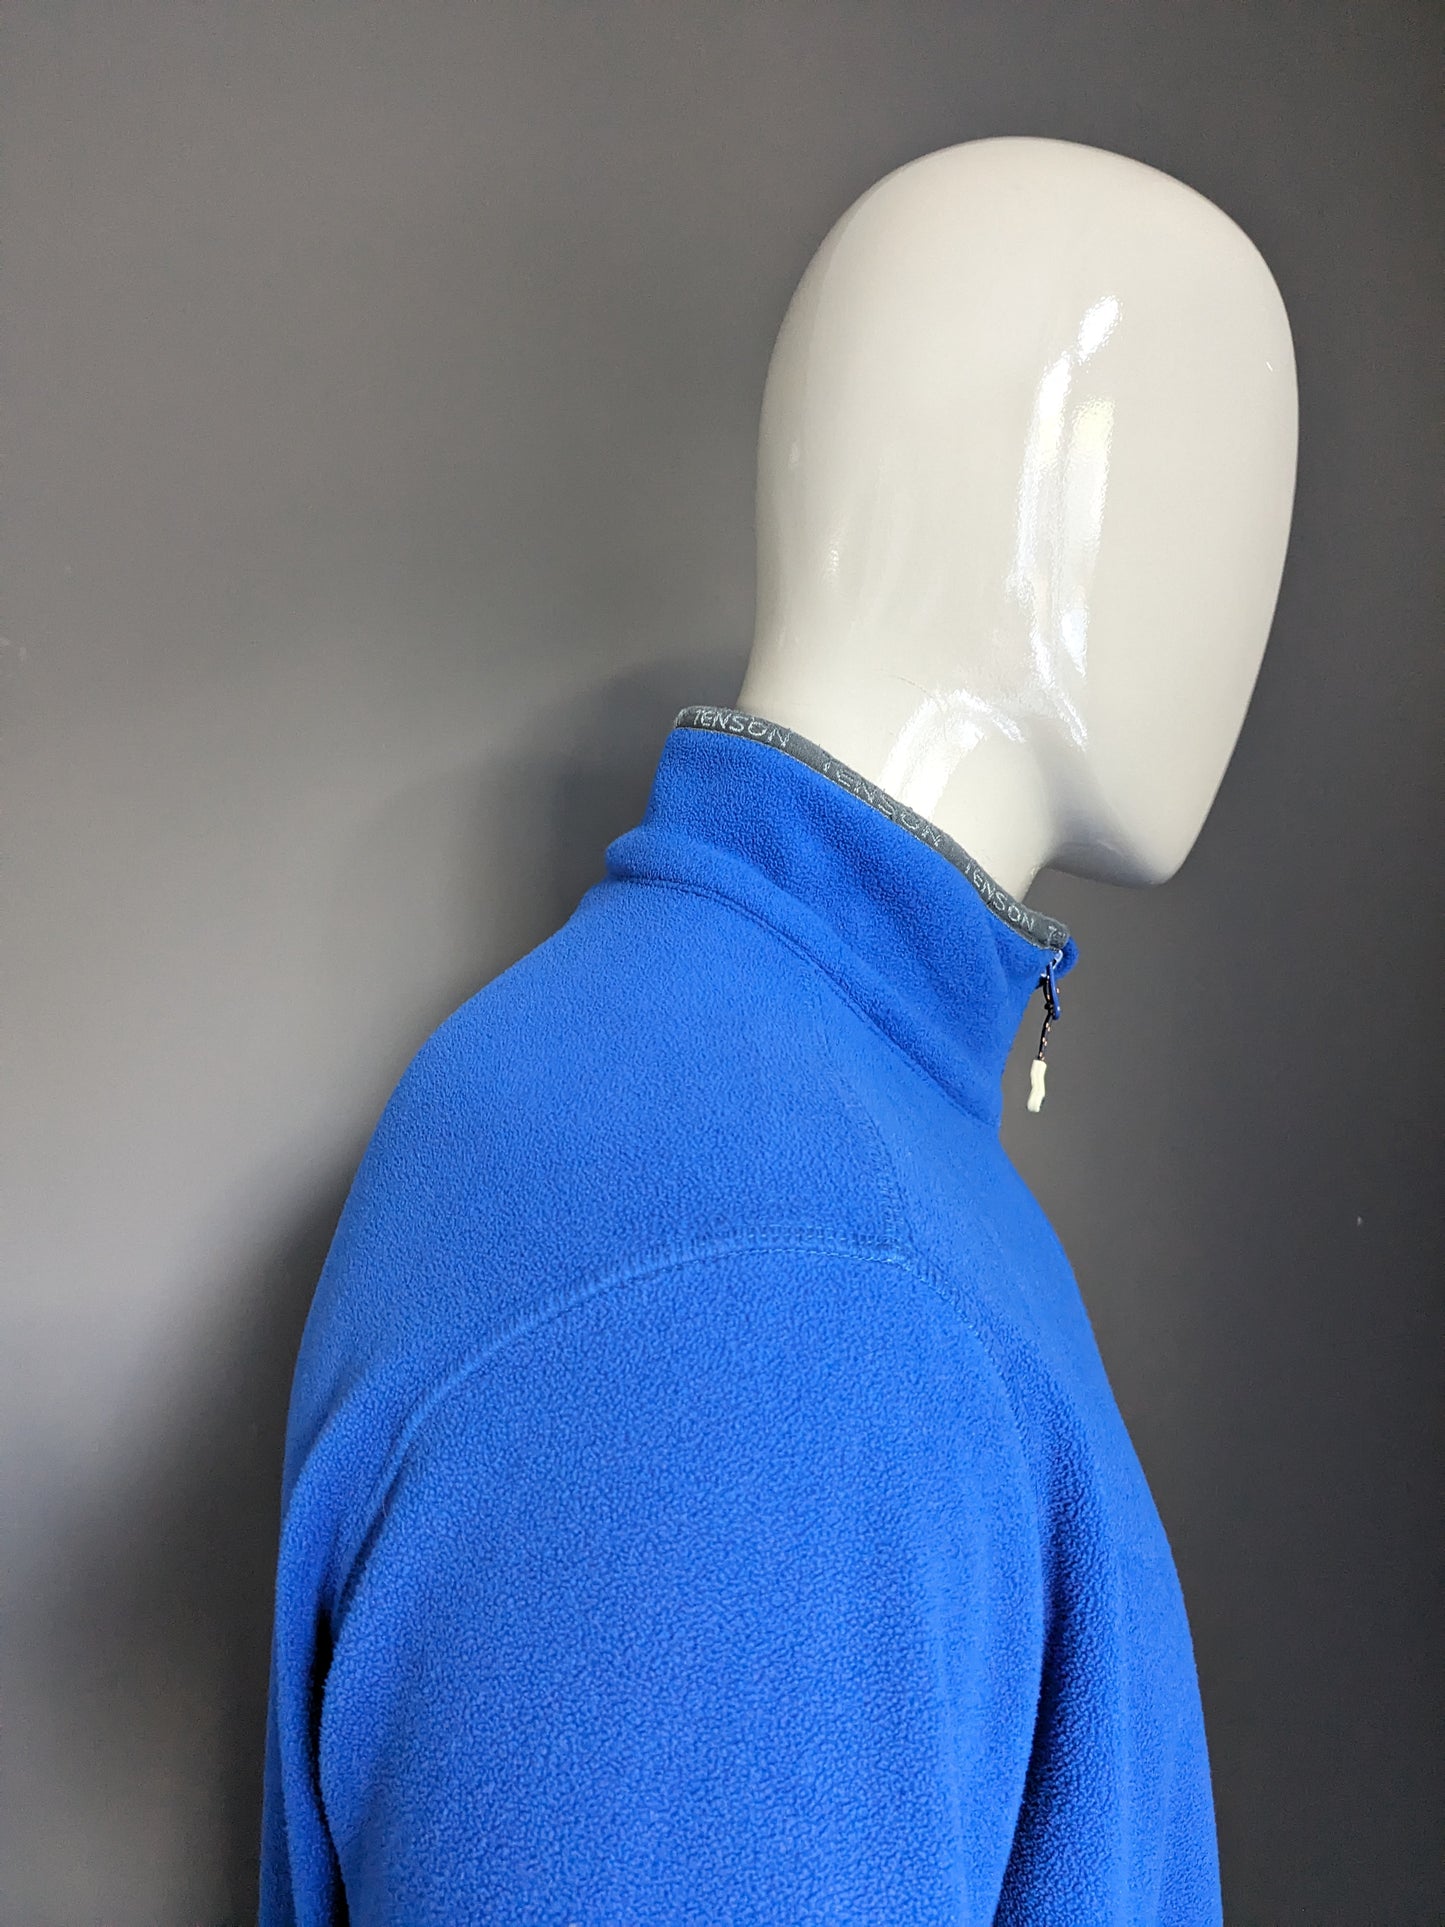 Tenson Fleece vest. Blue colored. Size XL.